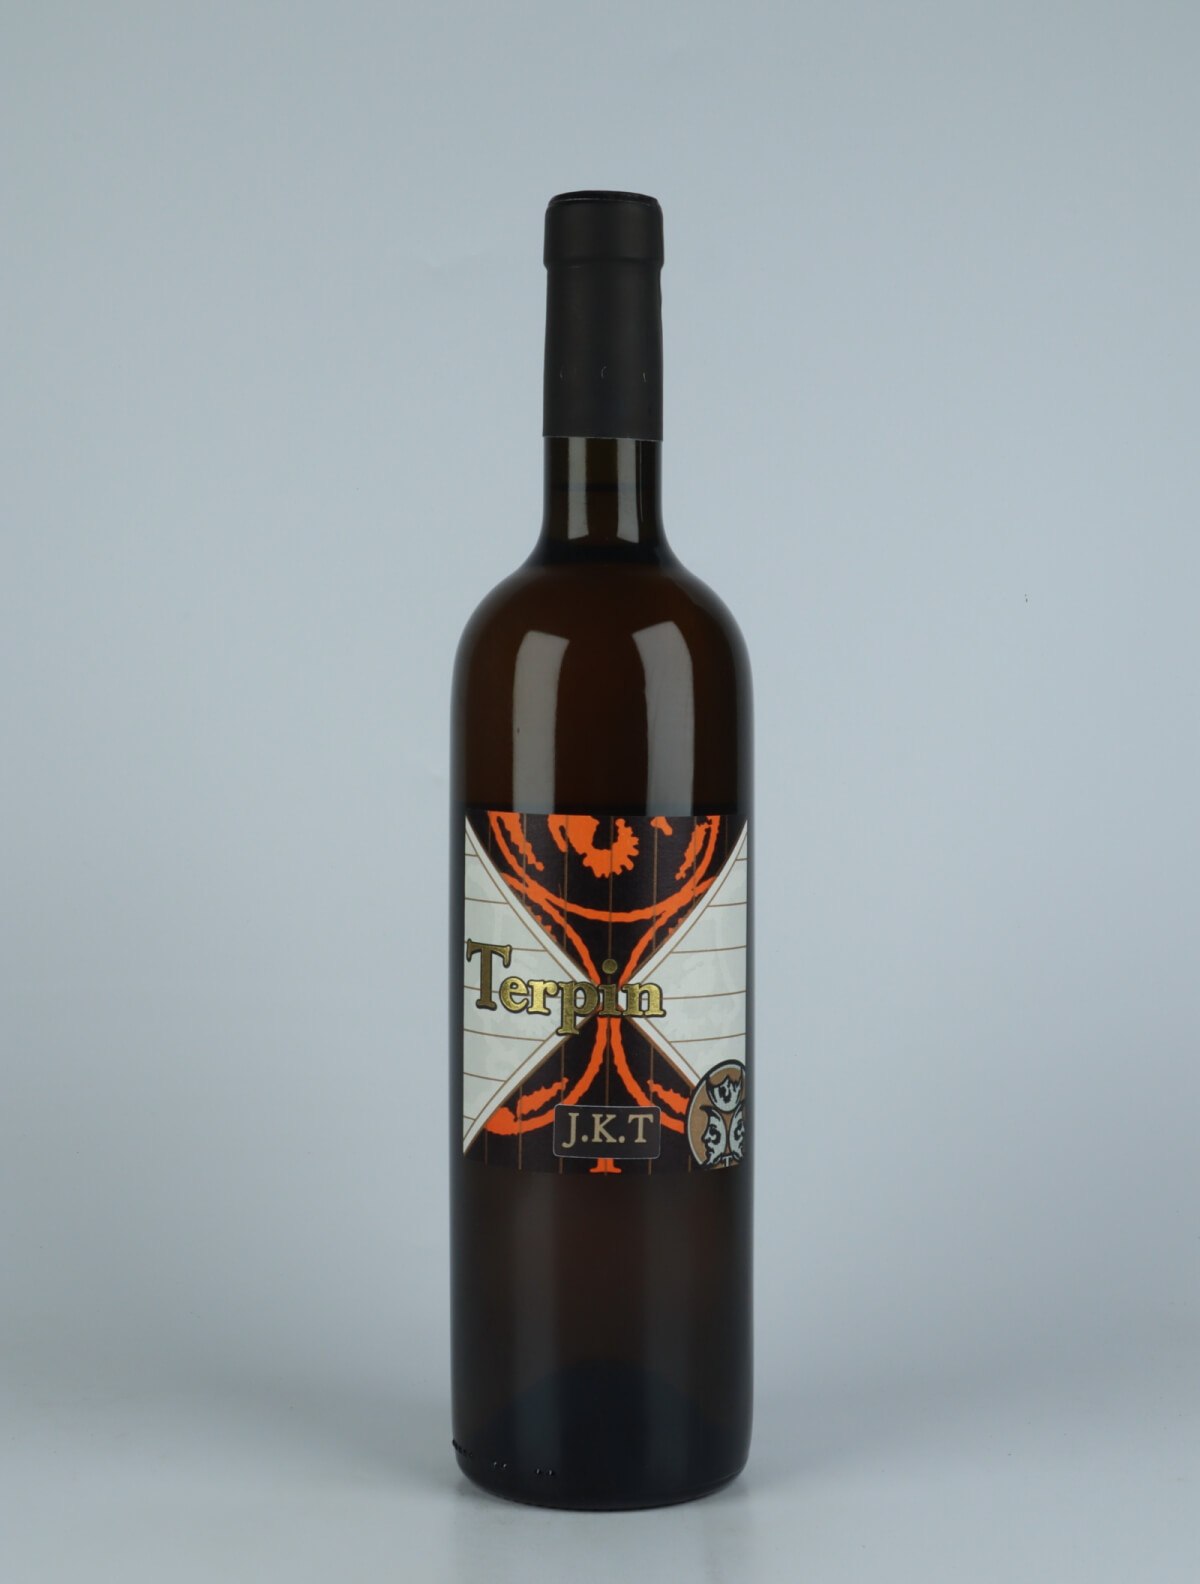 En flaske 2018 Jakot Orange vin fra Franco Terpin, Friuli i Italien